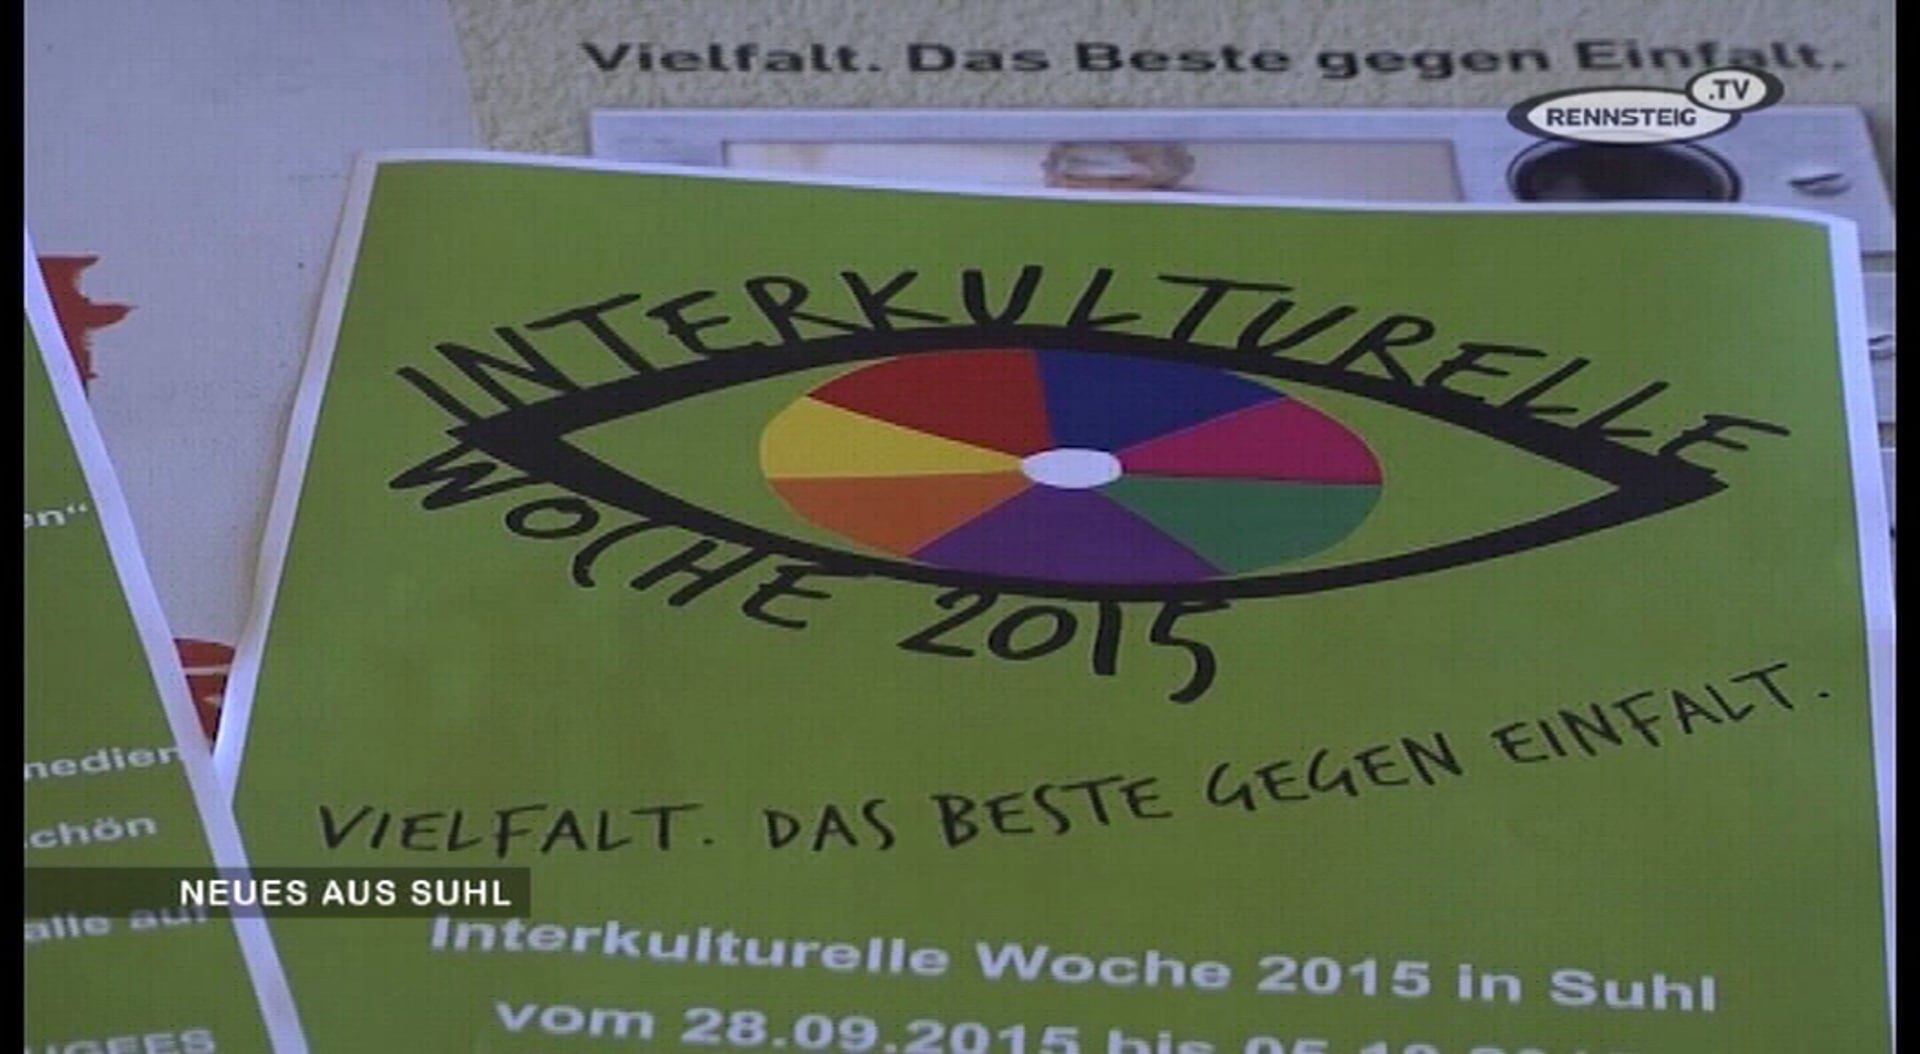 Neues aus Suhl - Vorschau auf die Interkulturelle Woche 2015 - Rennsteig TV